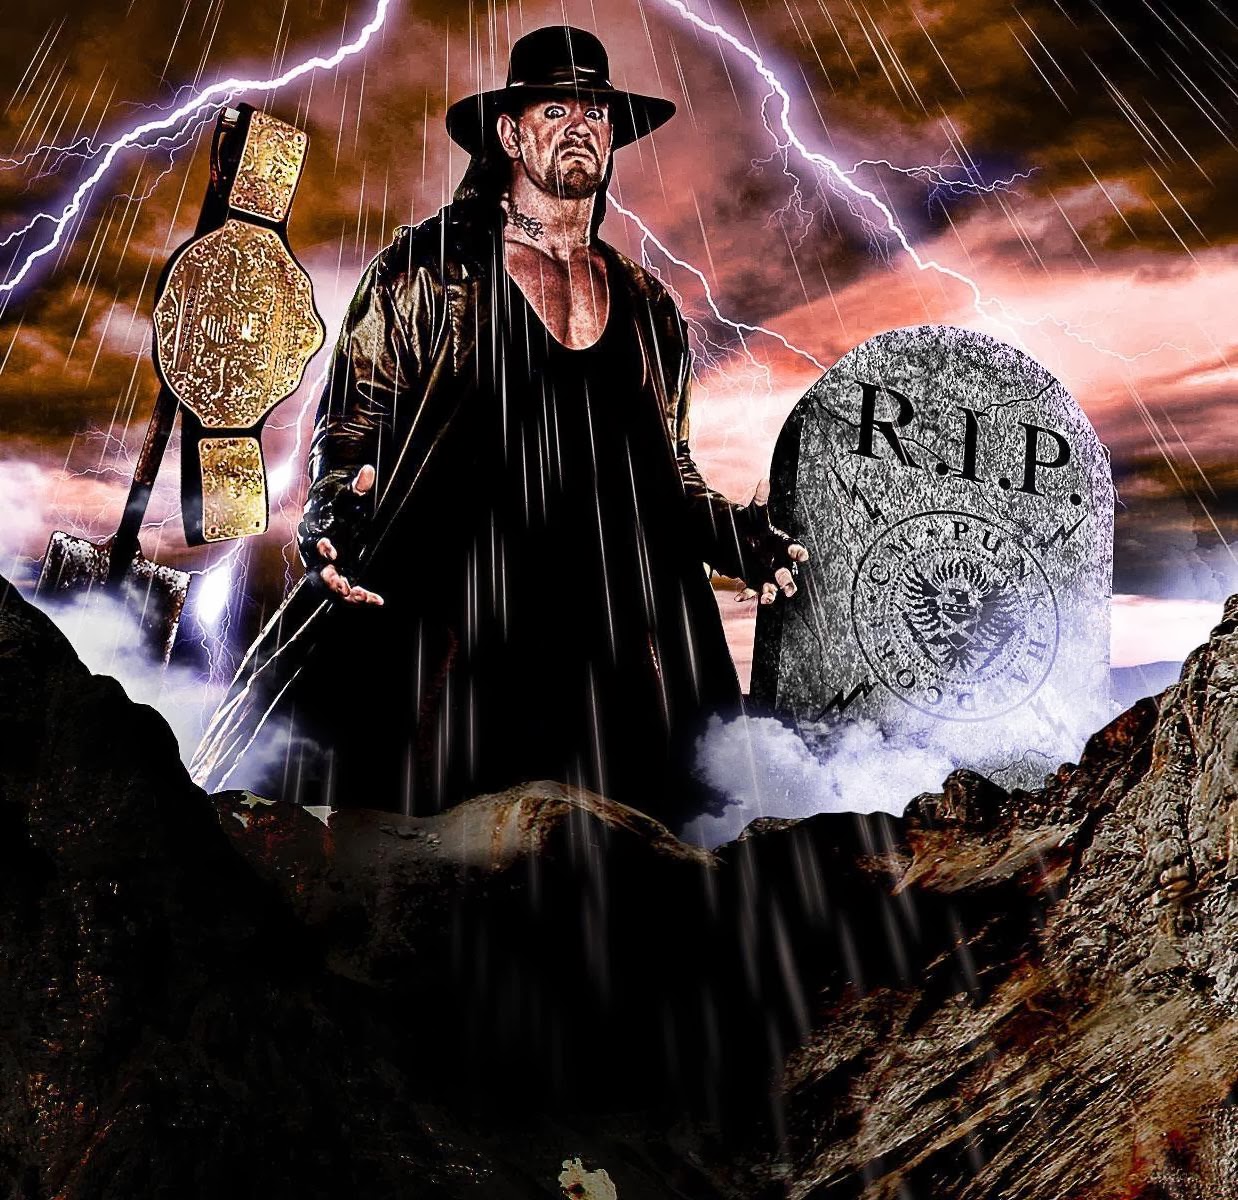 Undertaker Hd Wallpapers Free Download | WWE HD WALLPAPER ...